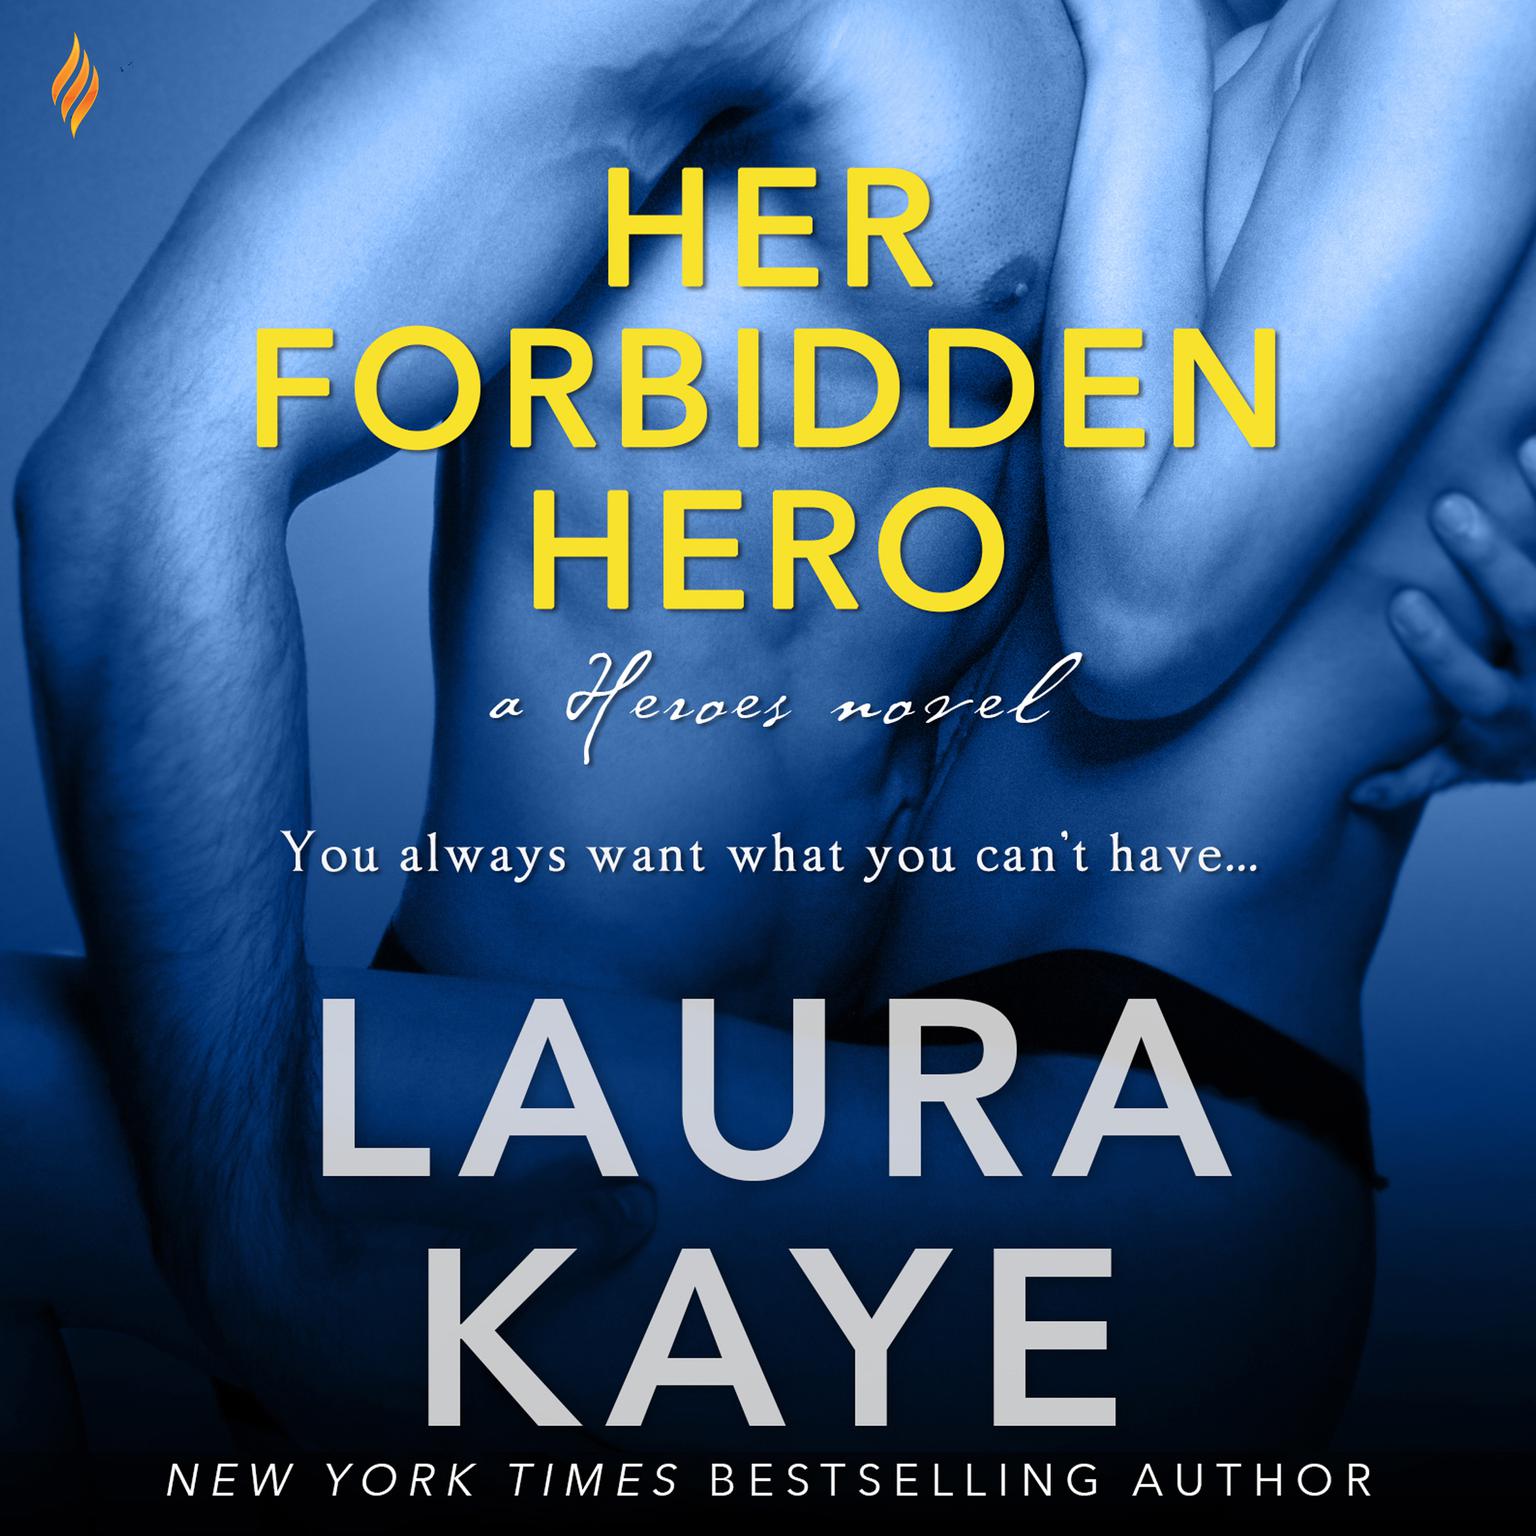 Her Forbidden Hero Audiobook, by Laura Kaye